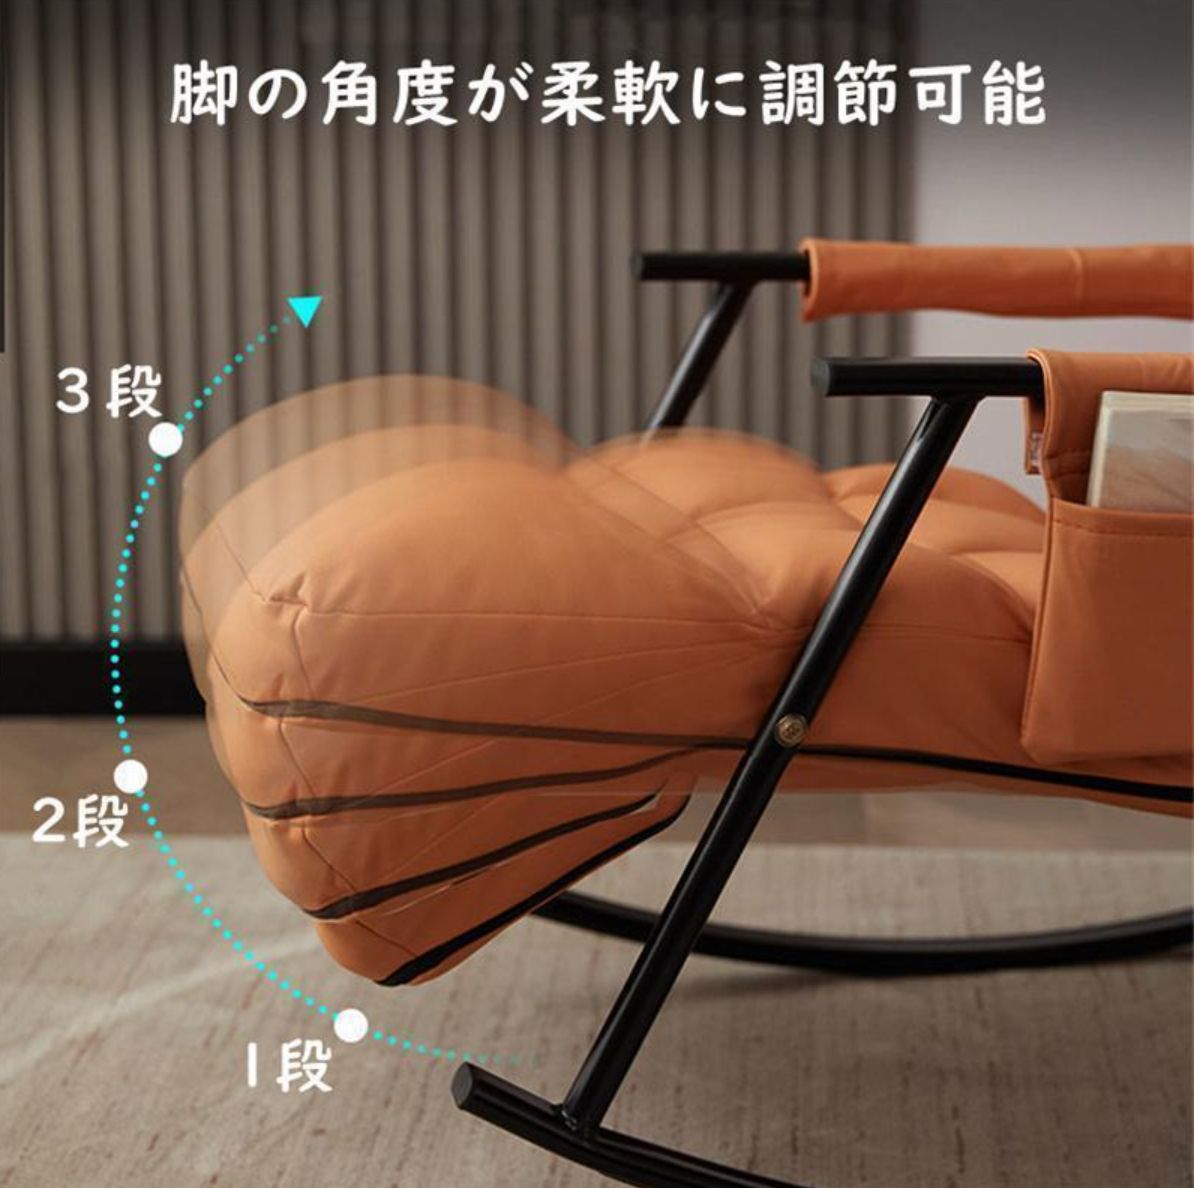 シングルソファー レジャー椅子 ロッキングチェア 大人用 快適 便利